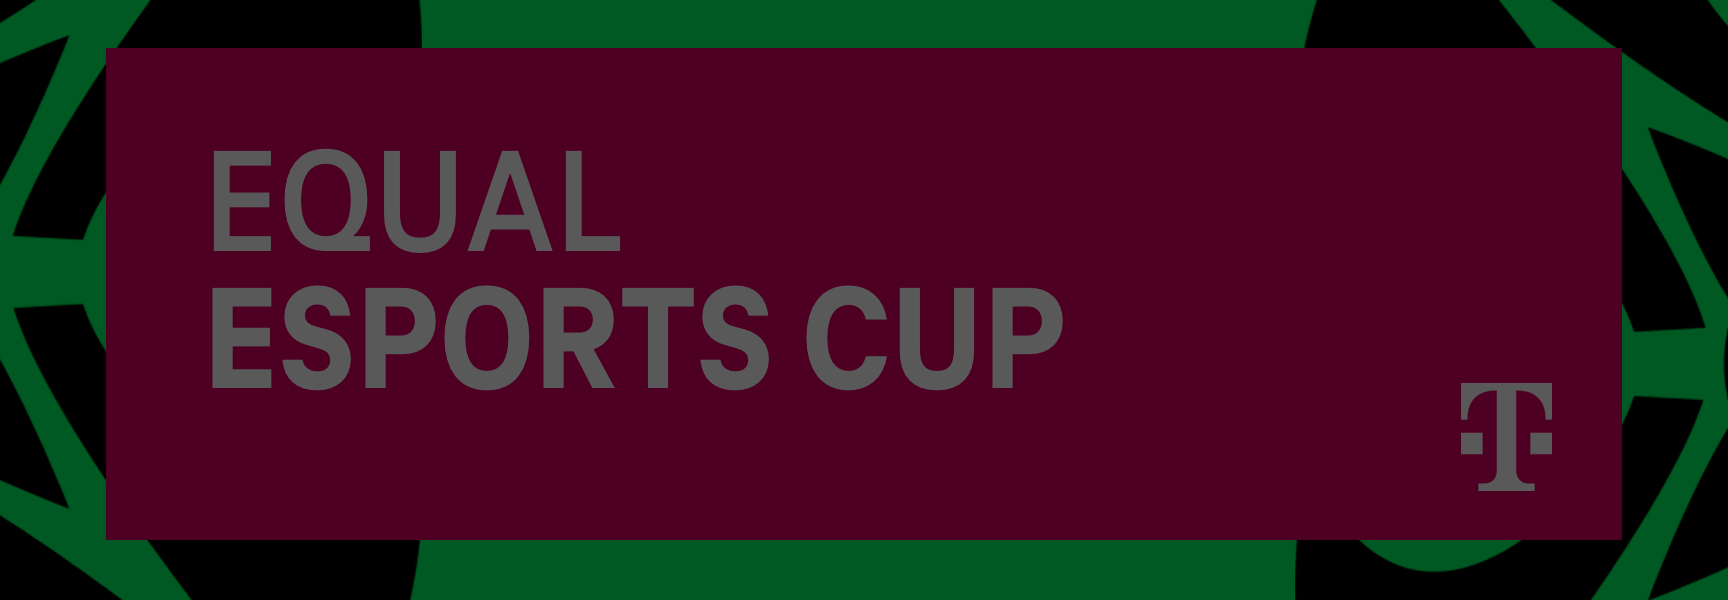 Equal eSports: Equal eSports Cup